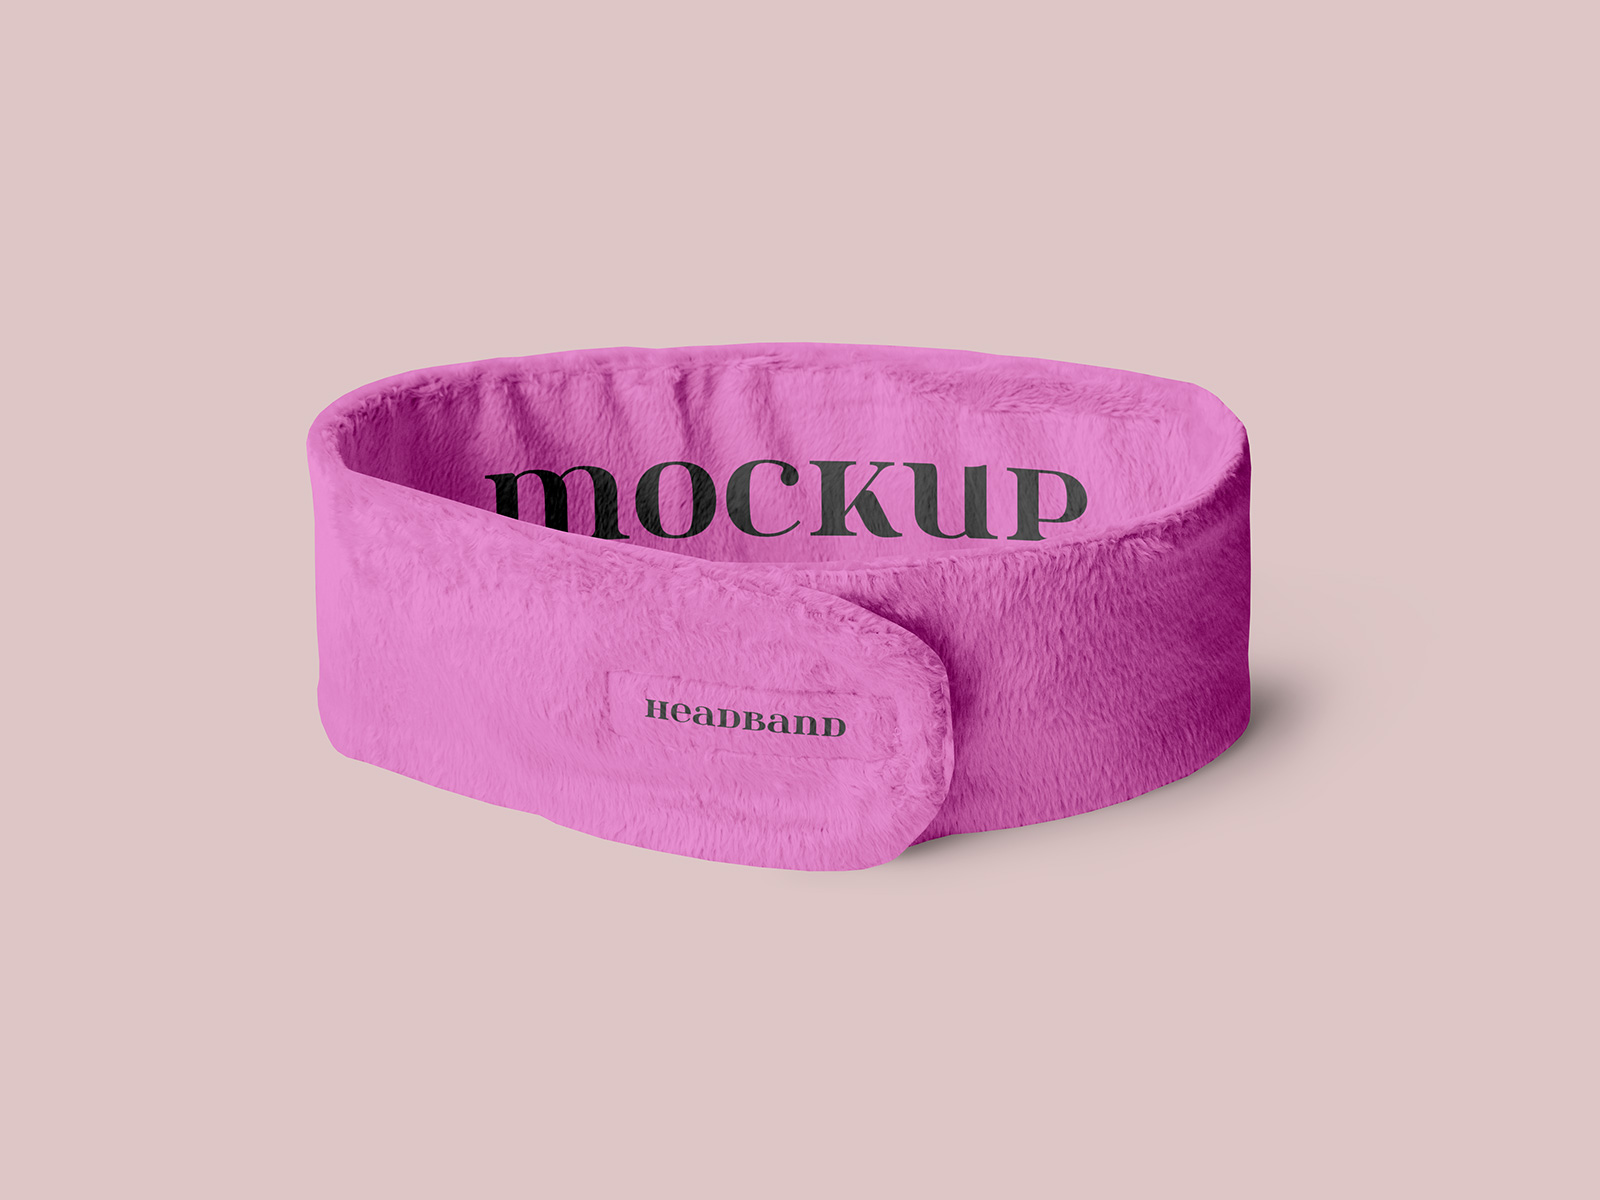 Free Spa Wrap Cosmetic Velcro Headband Mockup PSD